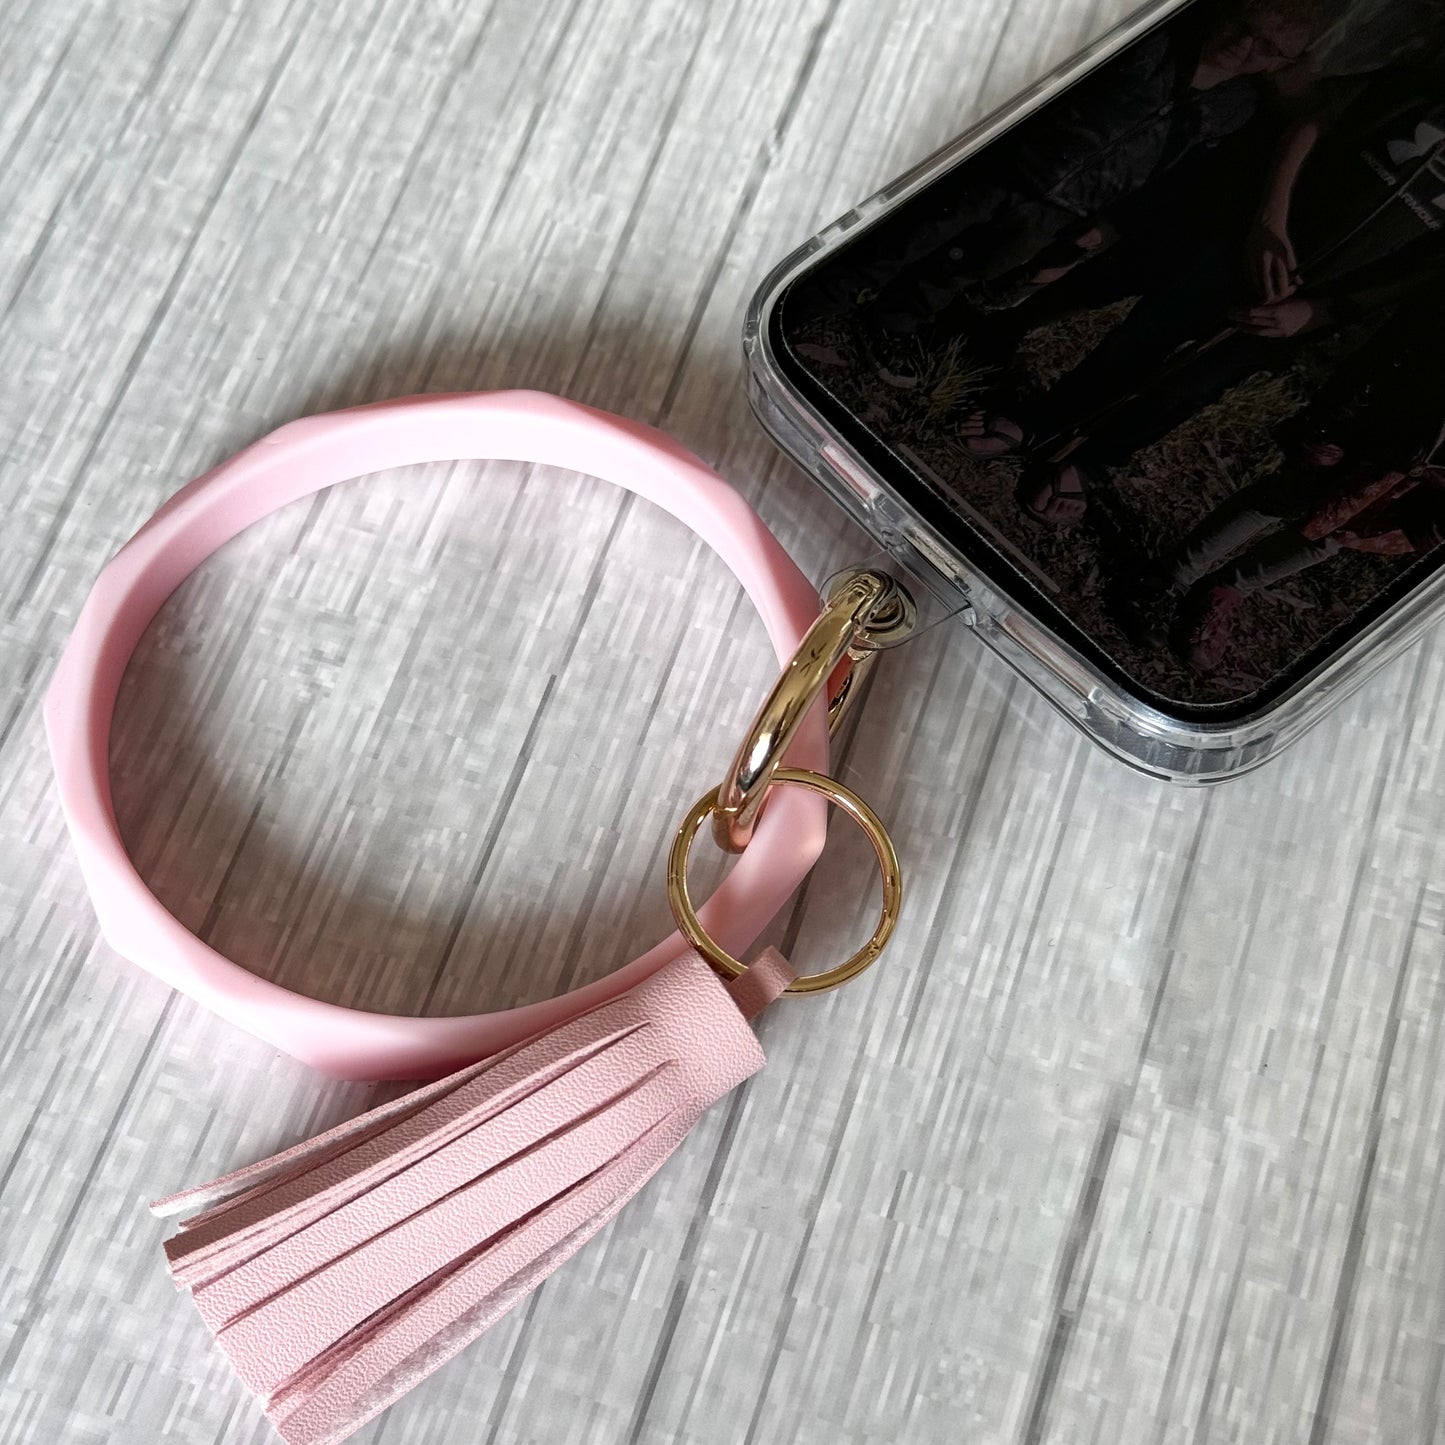 Phone Bracelet Keychain with Tether Tab - STRAWFLOWER